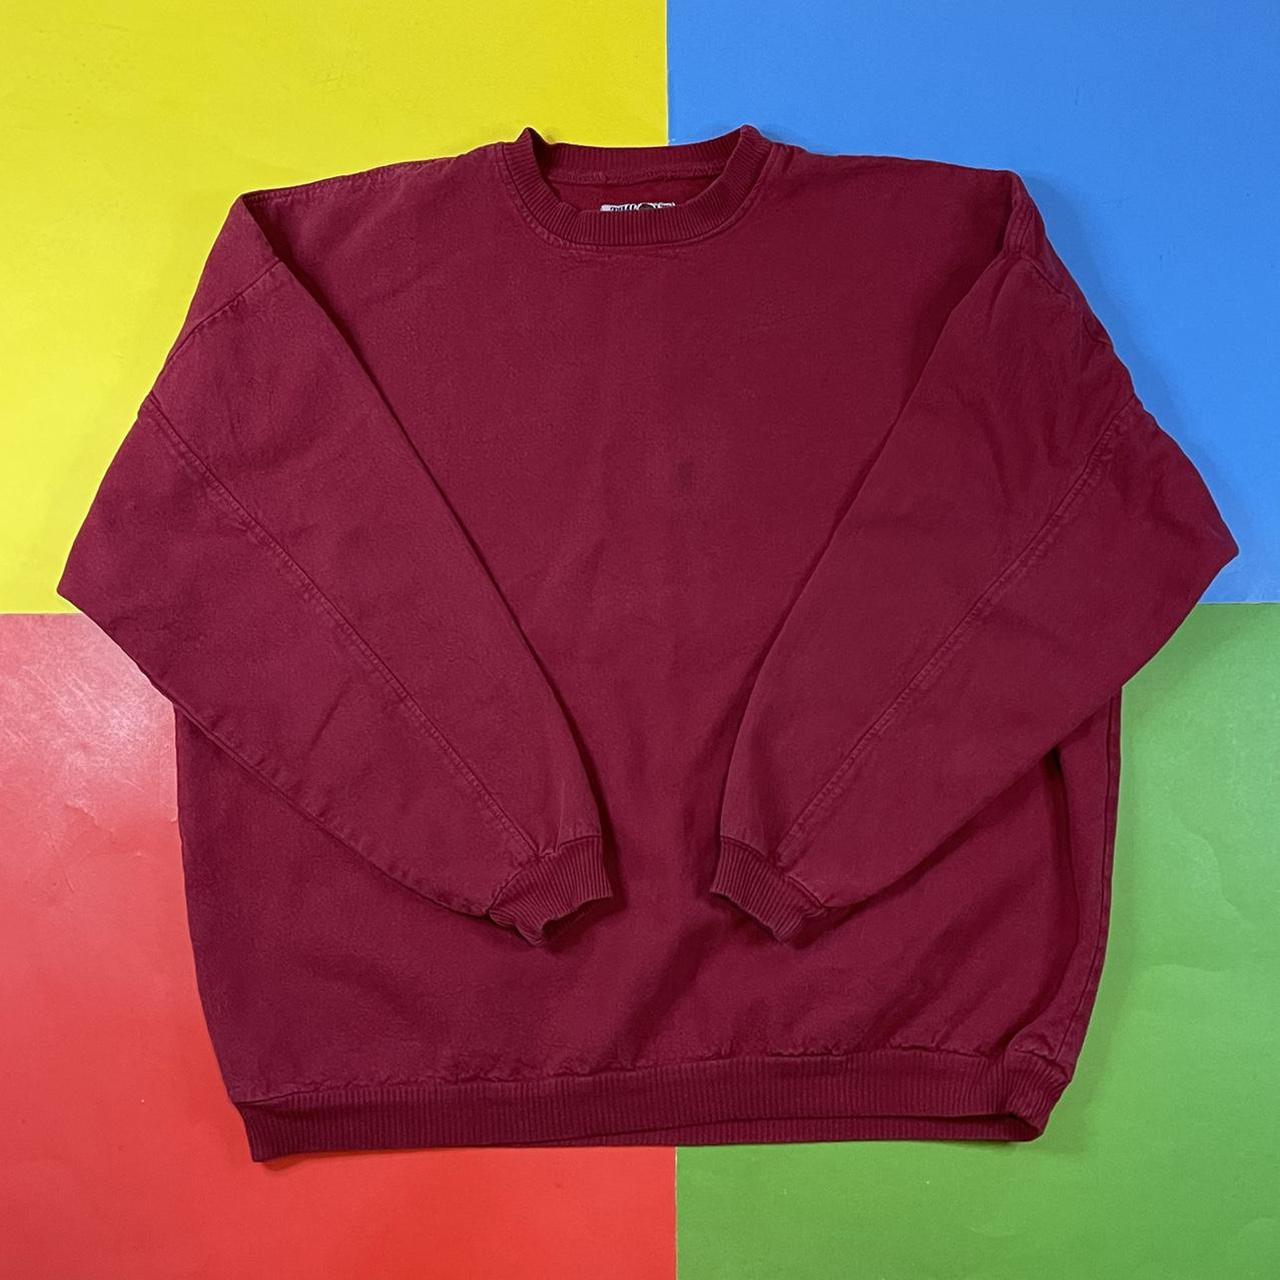 Vintage oversized sweatshirt. 90’s combed cotton... - Depop